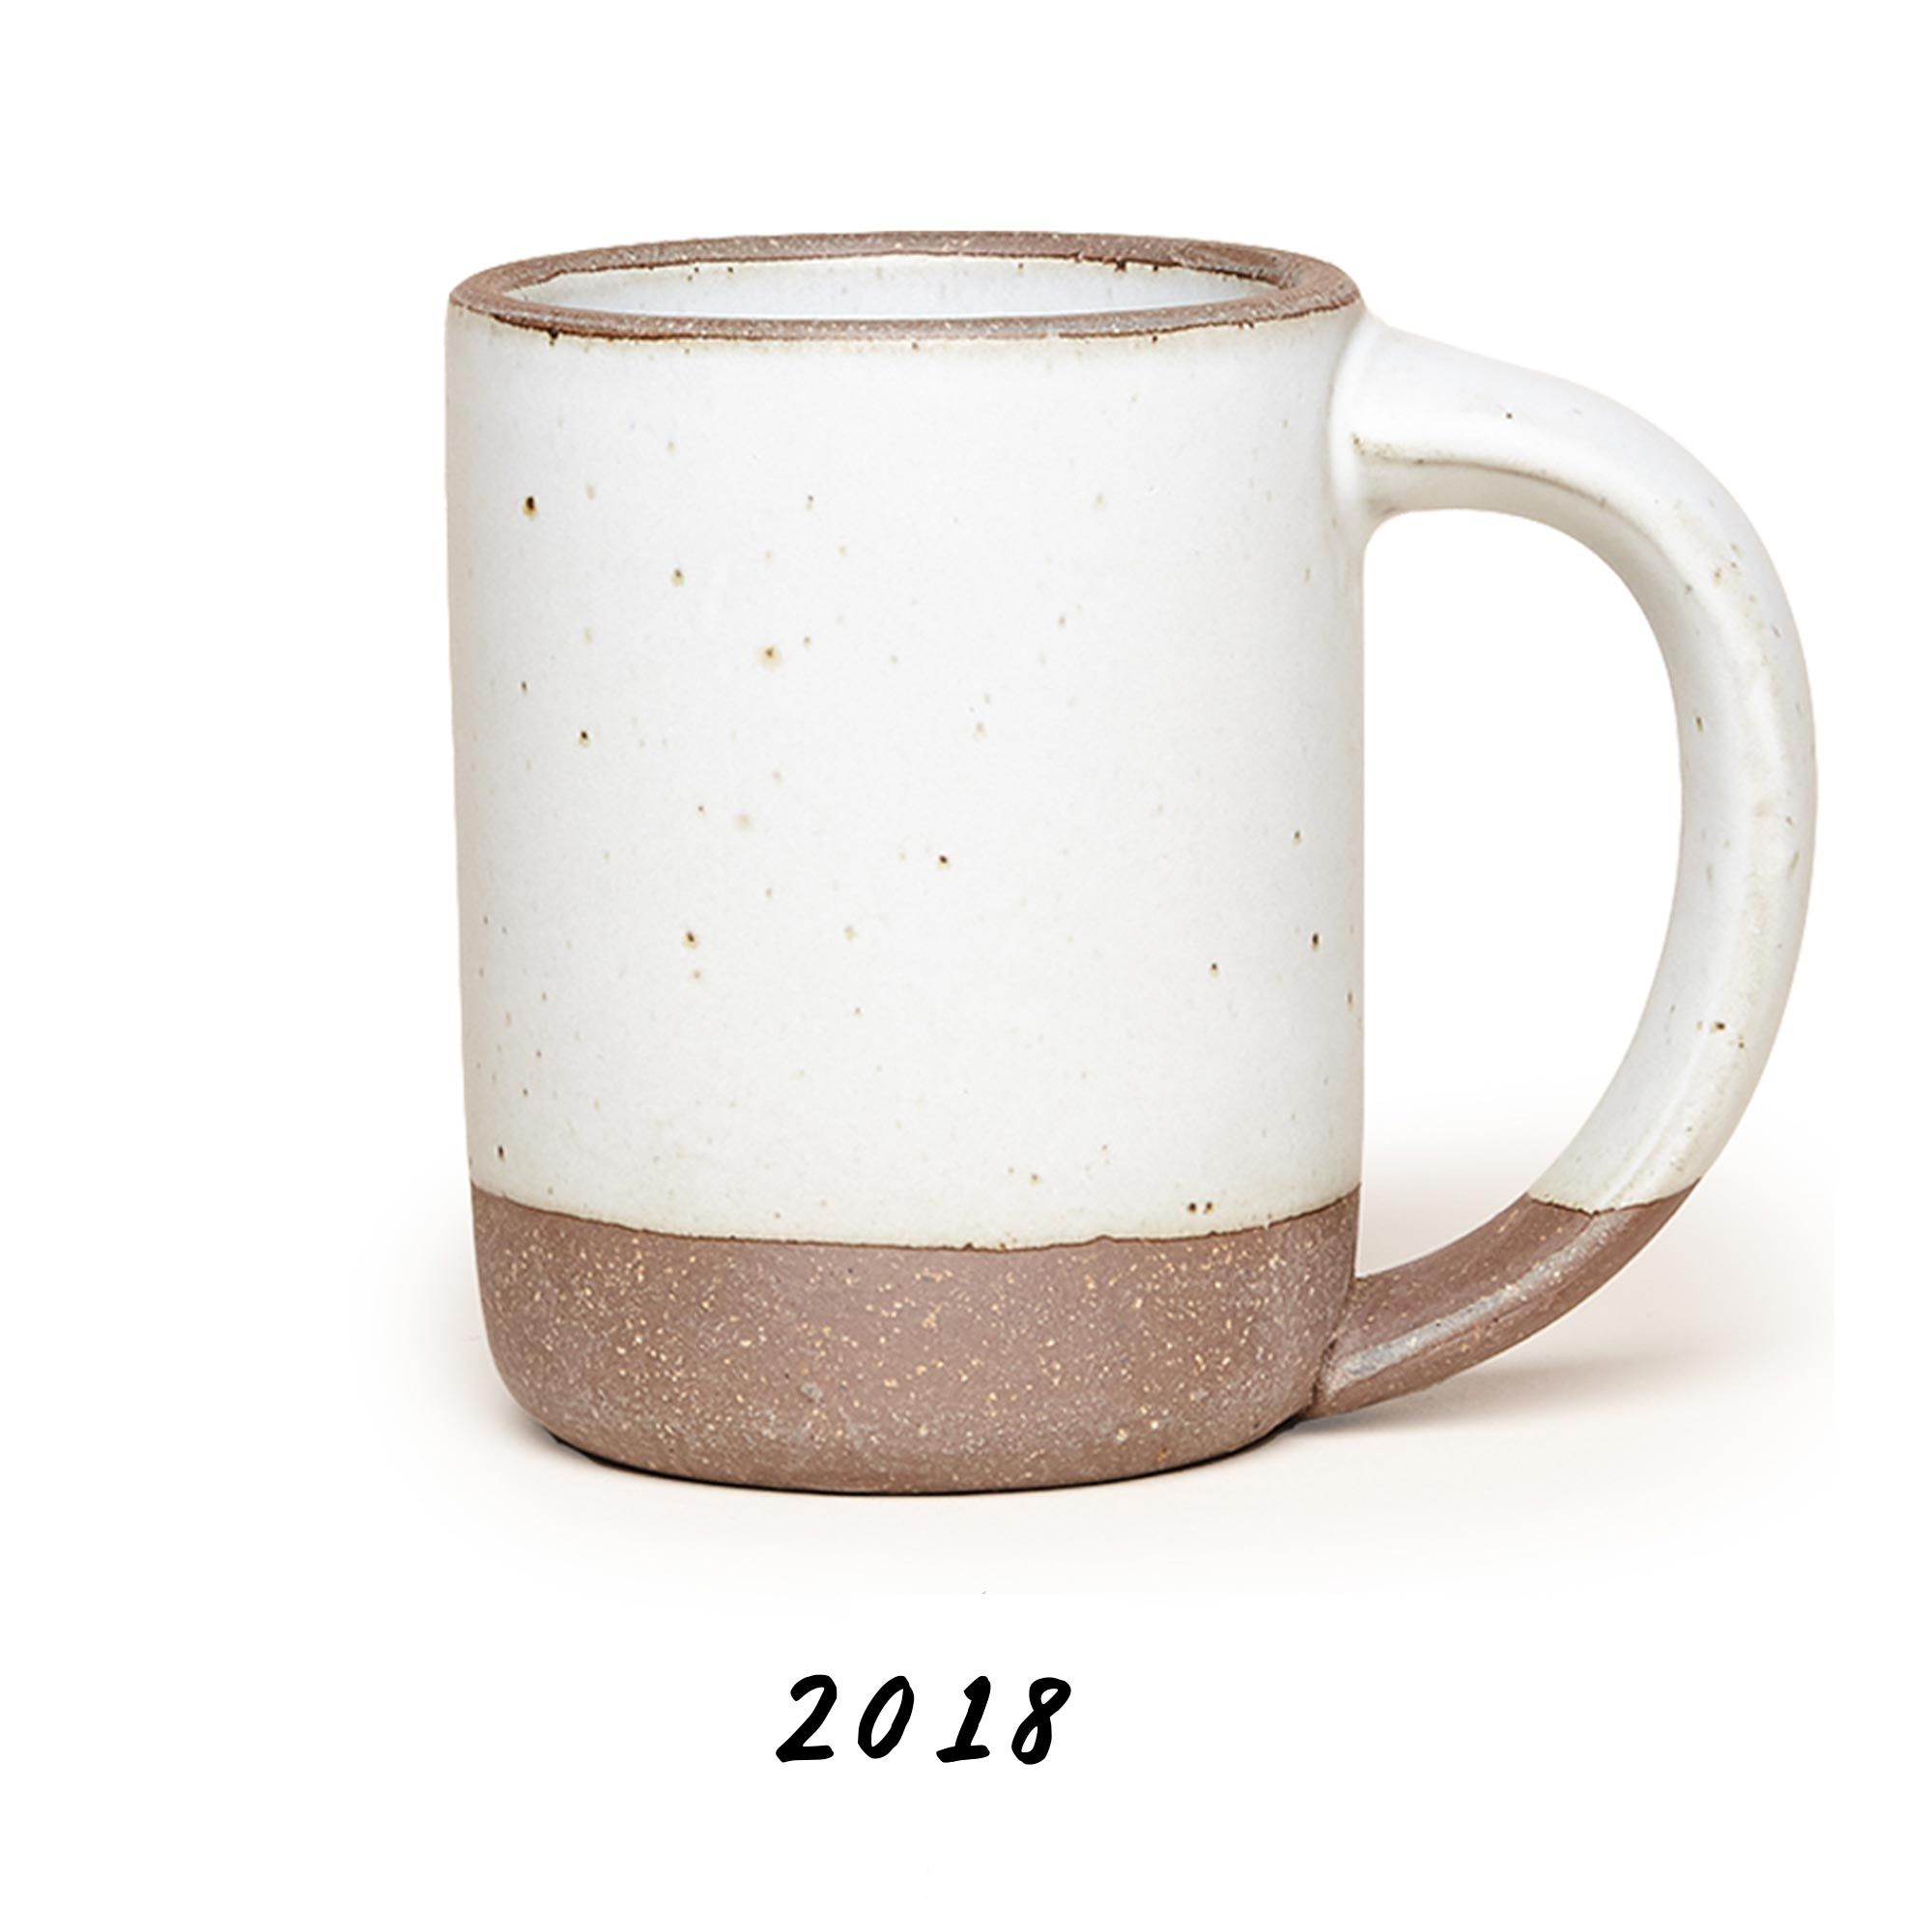 2018 The Mug 1.0